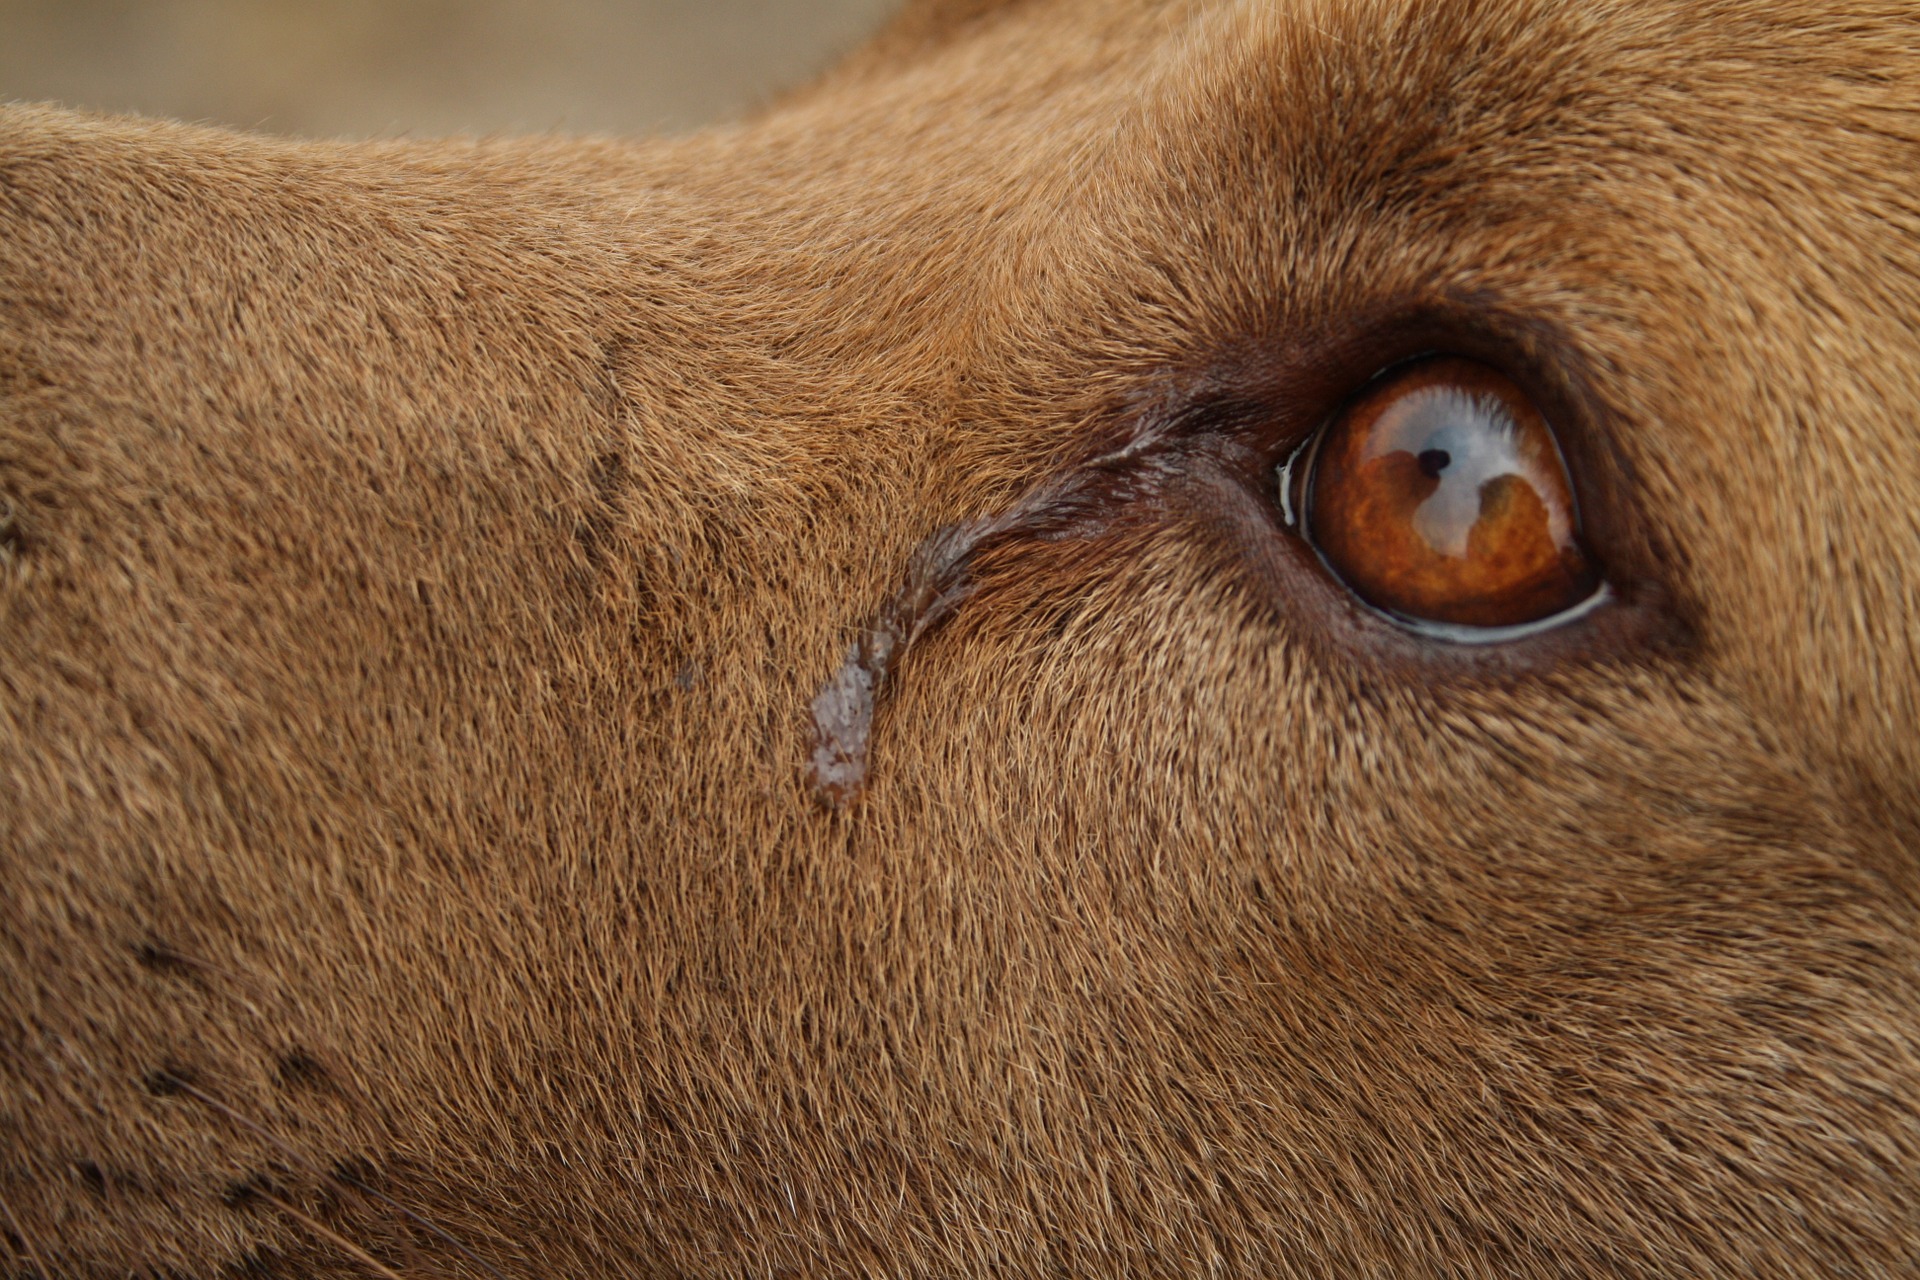 Konjunktivitida u psa se projevuje nadměrným slzením. K umytí očí psa lze použít fyziologický roztok, heřmánek se nesmí používat.